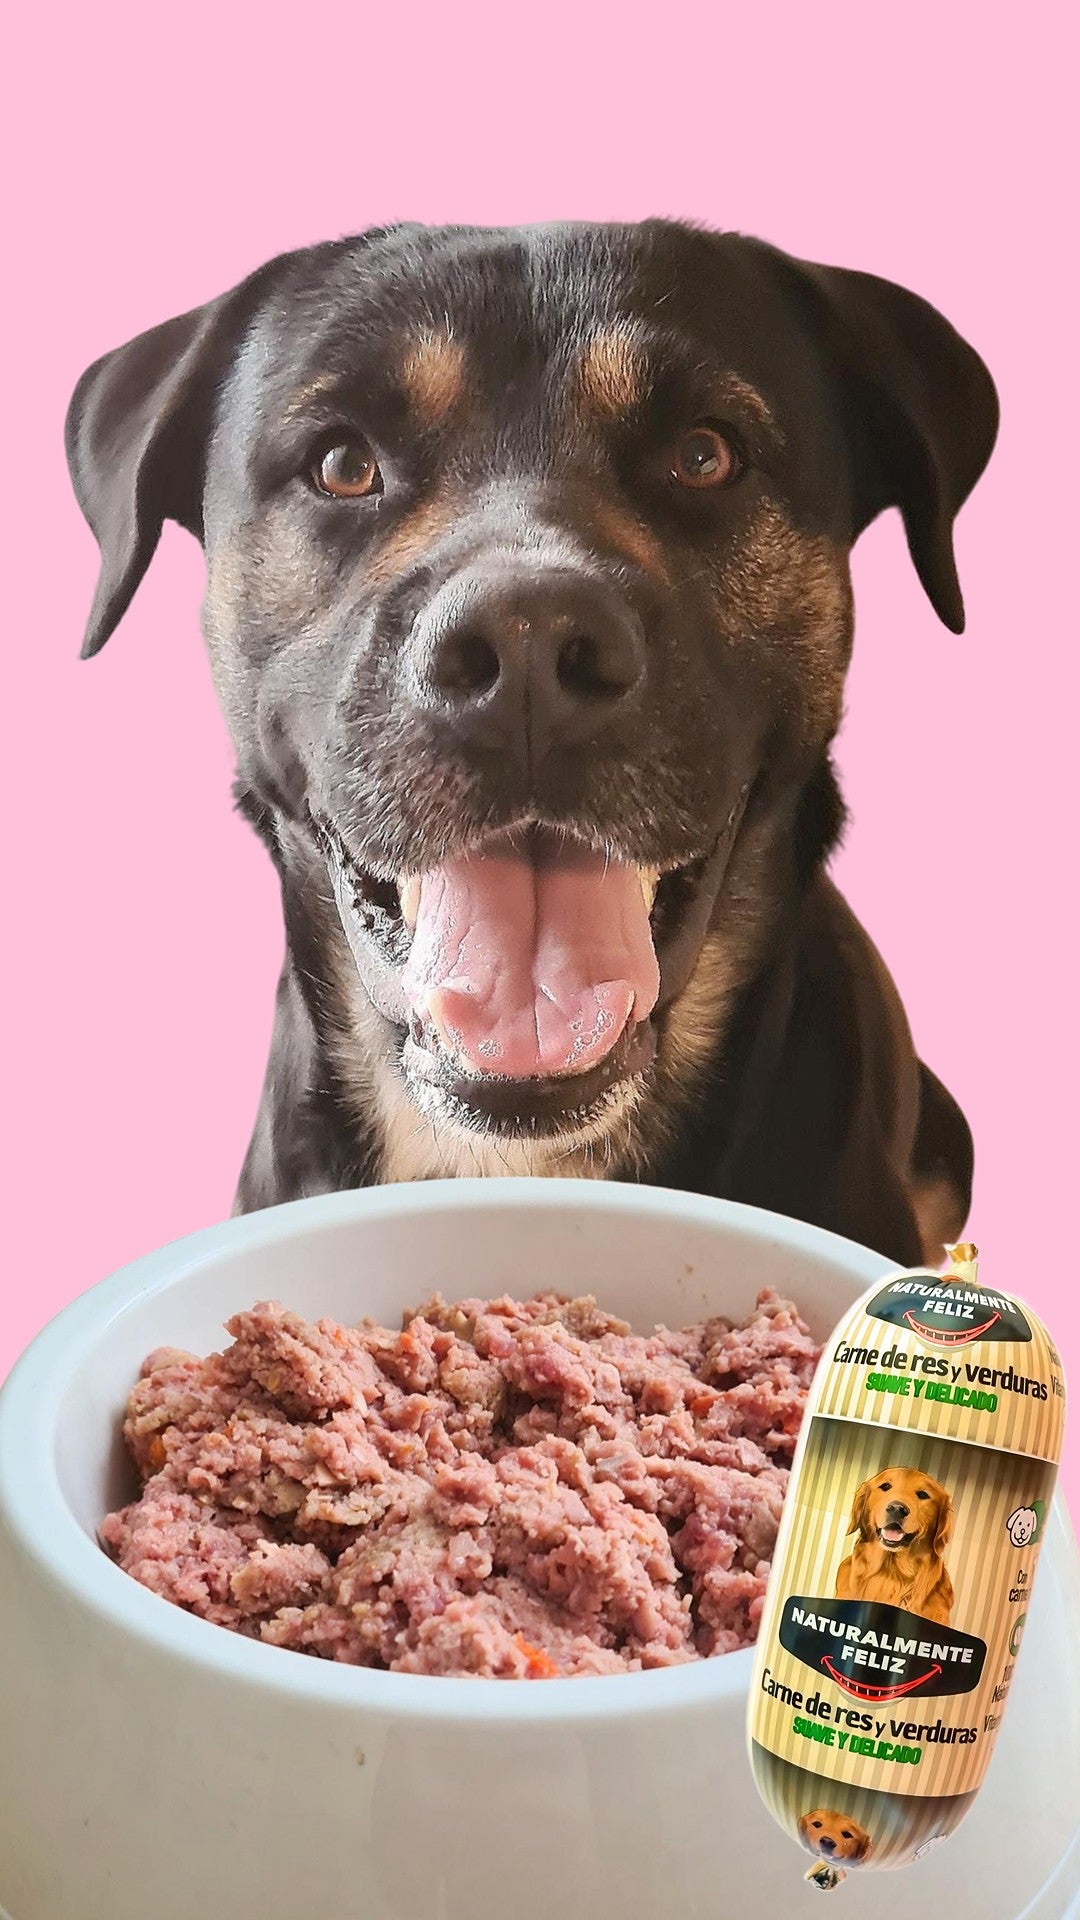 Un feliz perro negro y marrón espera ansiosamente su comida, con un plato de carne cruda delante. Al lado del bol, hay un paquete con la etiqueta "Cocido Natural de Ternera fresca y verduras - Naturalmente Feliz (5,4KG - 12 X 450gr)", con ingredientes seleccionados. El fondo es rosa, lo que contribuye a la escena alegre.